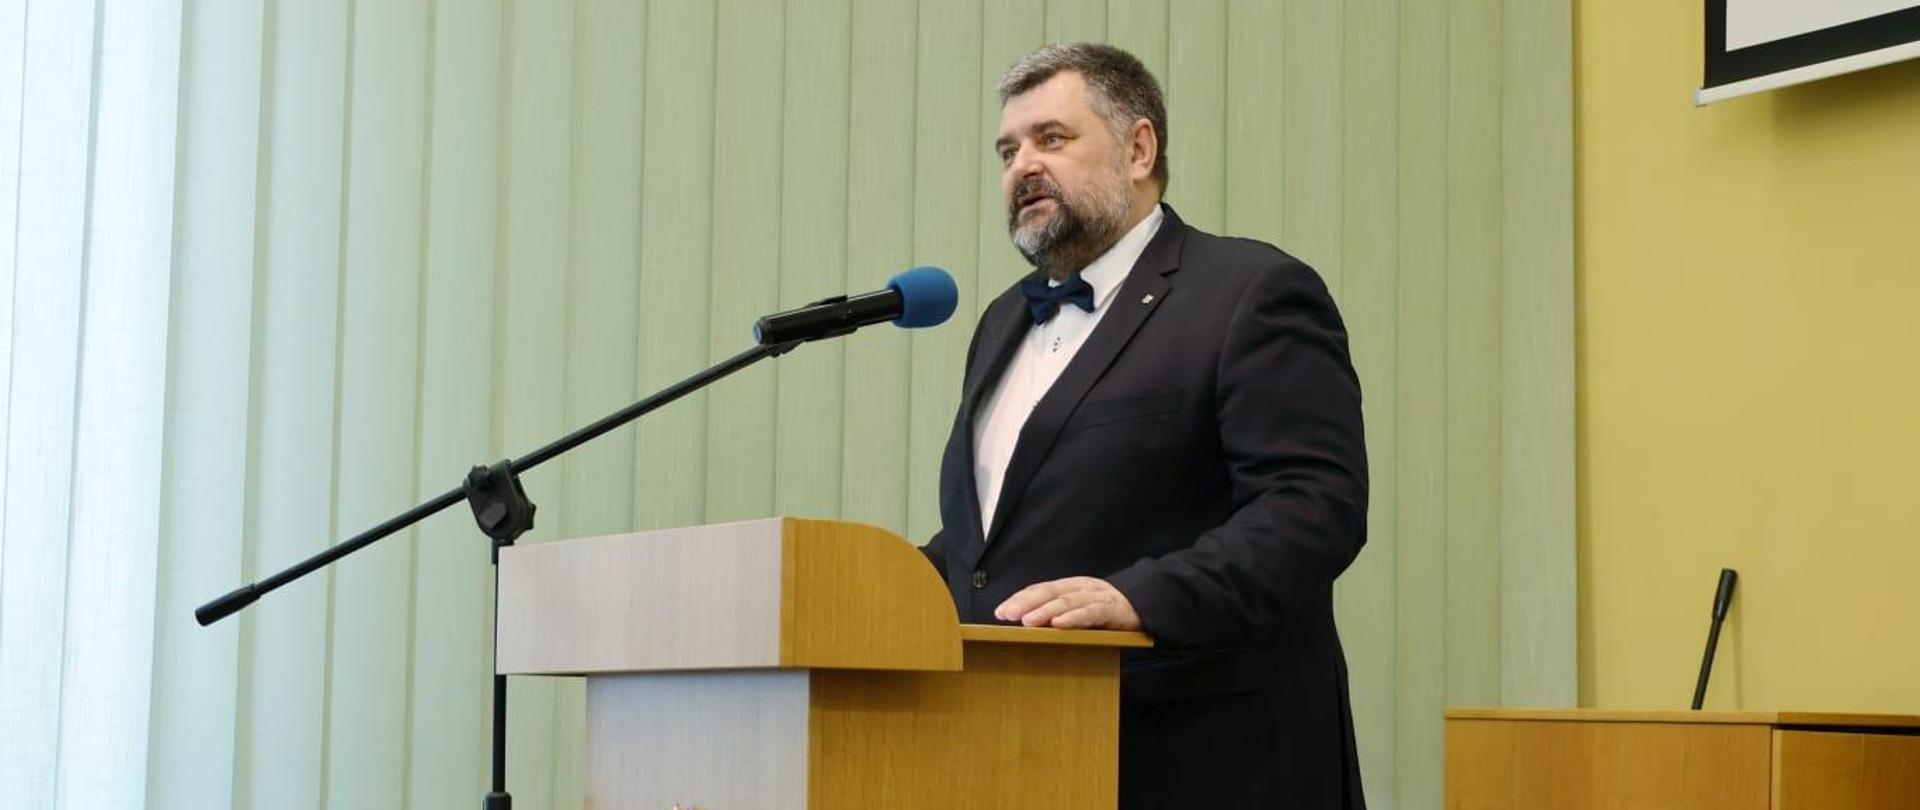 Dyrektor Instytutu Śląskiego dr Bartosz Kuświk. Na zdjęciu widać jak stoi przy mównicy i przemawia do uczestników uroczystości. 